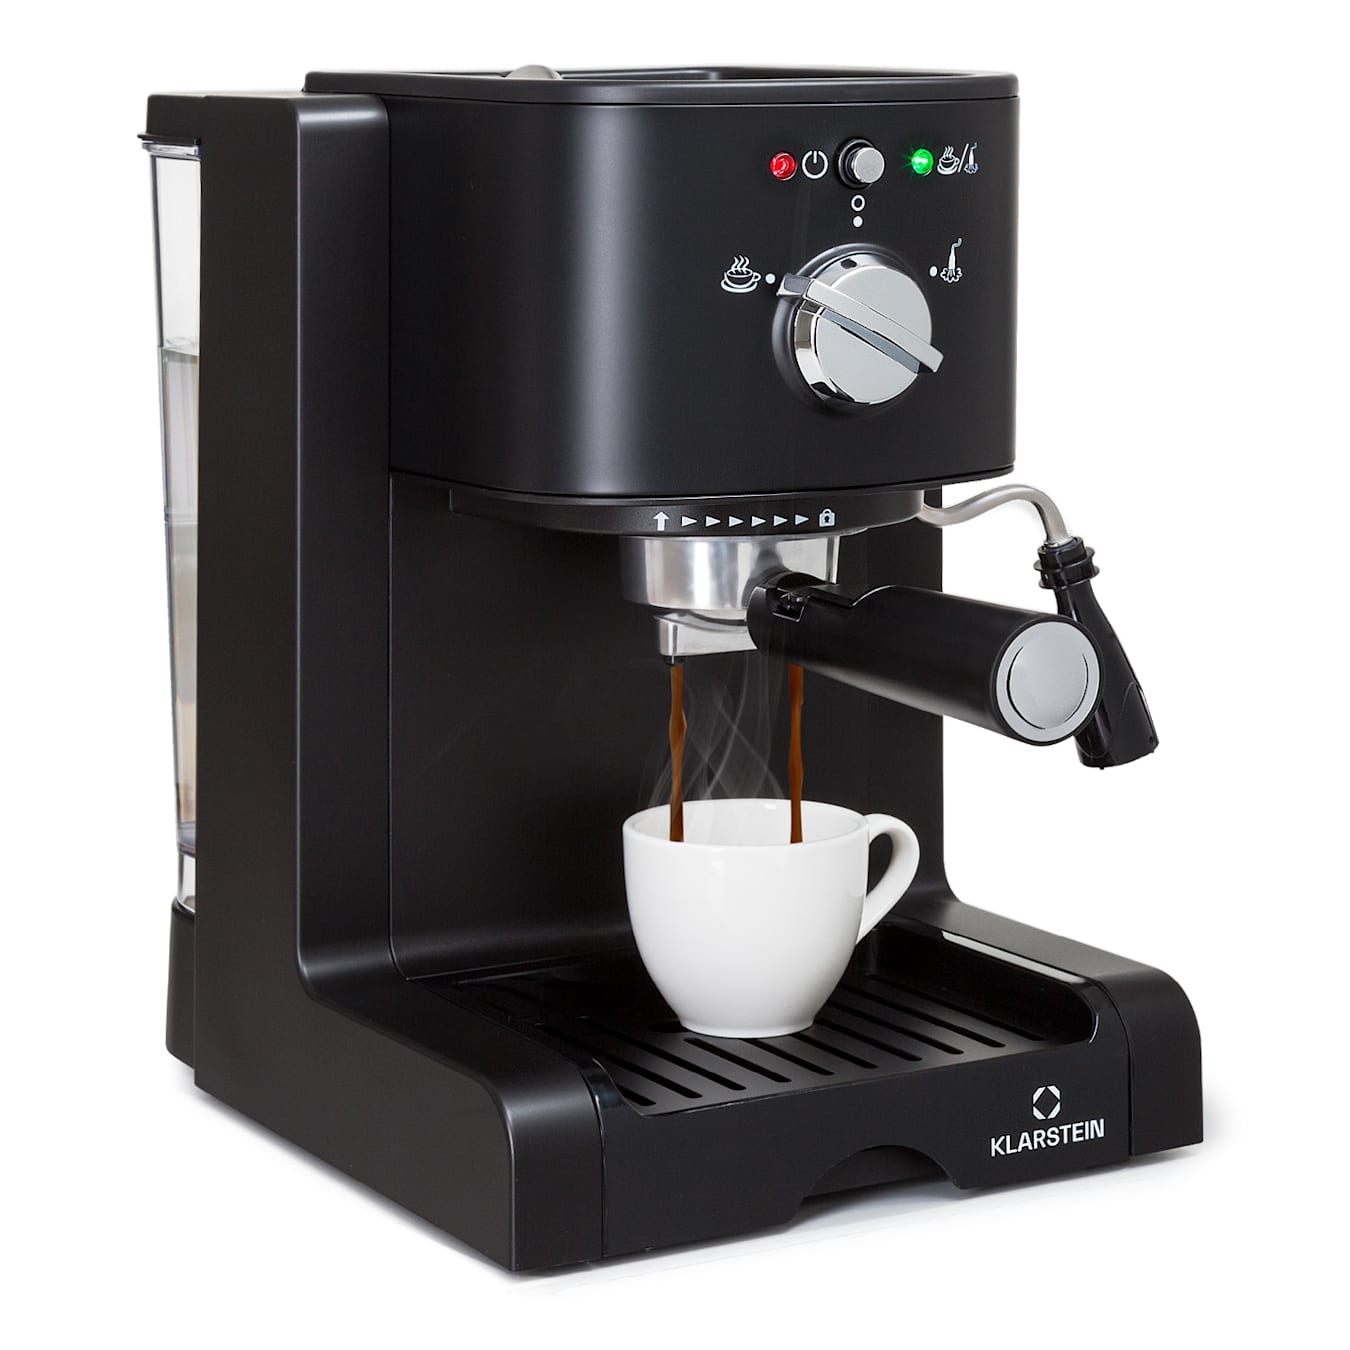 Passionata 20 espressoapparaat | cappuccino | melkschuim | zeefhouder | vermogen max. 1350 watt | bar | 1,25 liter waterreservoir voor 6 kopjes ook voor espressopads | afneembaar waterreservoir | 20 bar |